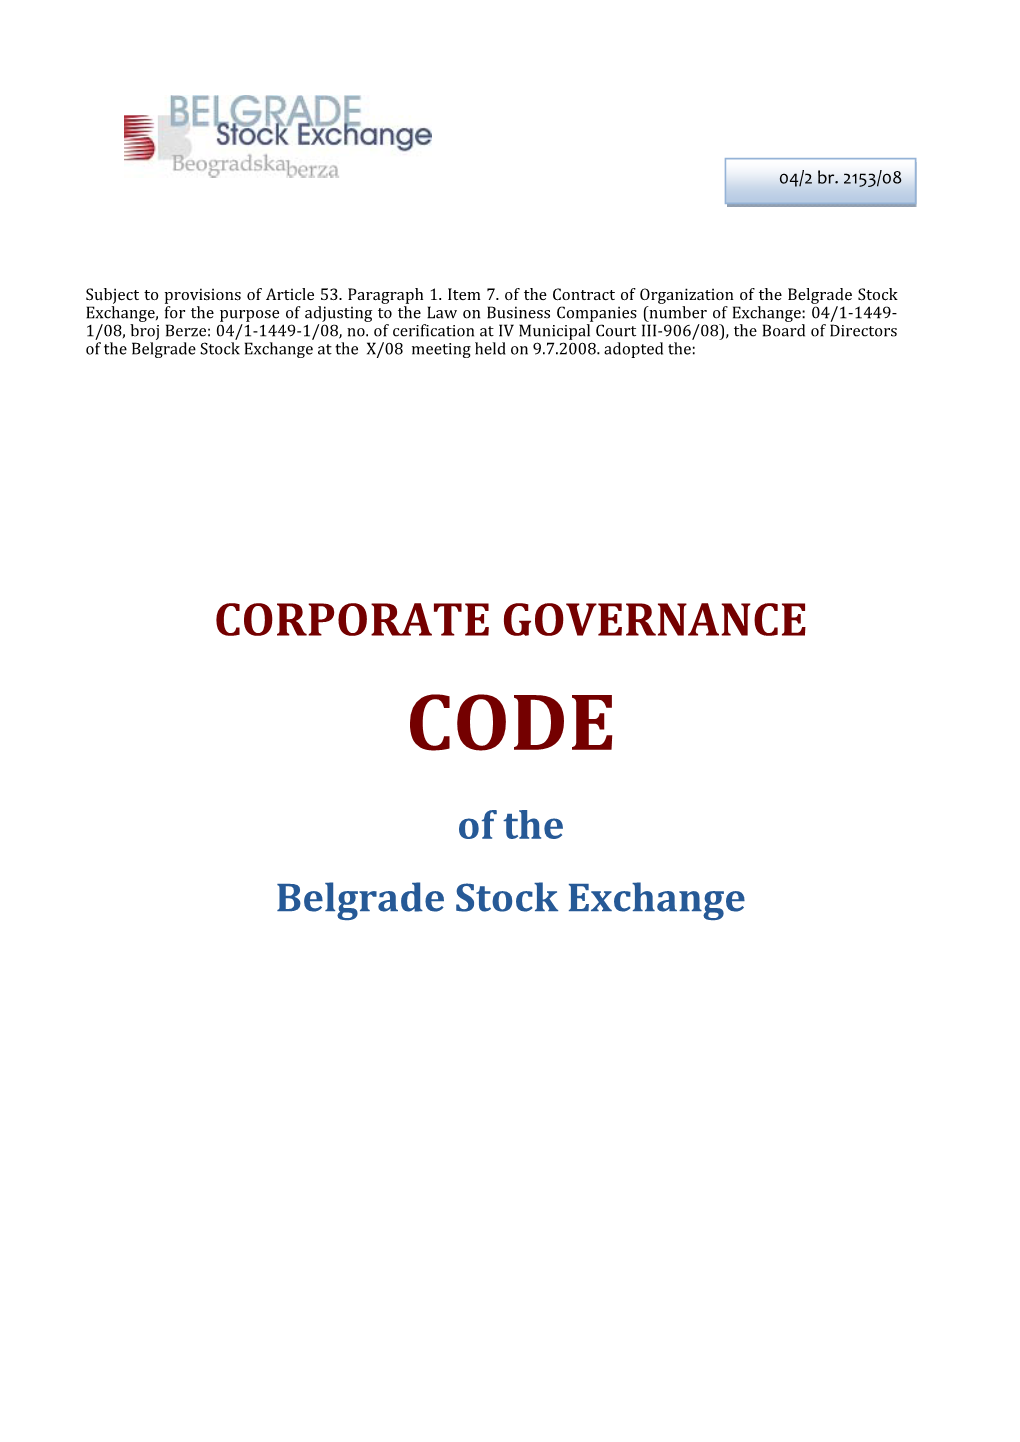 Corporate Governance Code Belgrade Stock Exchange